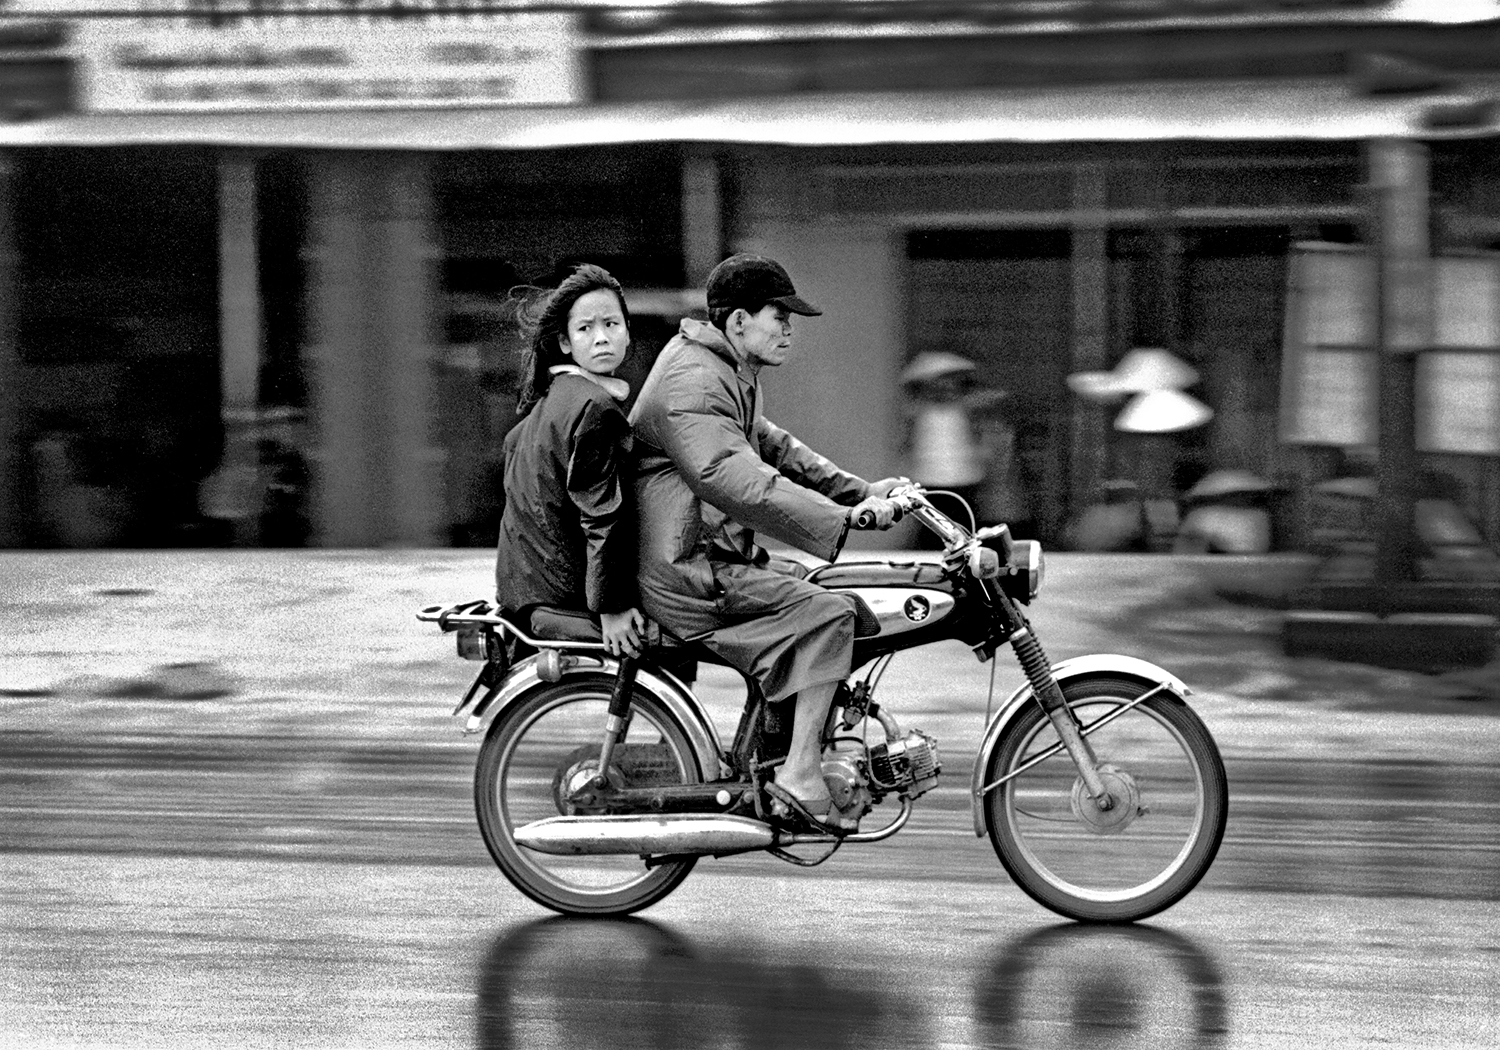  Danang, Vietnam (1970) 